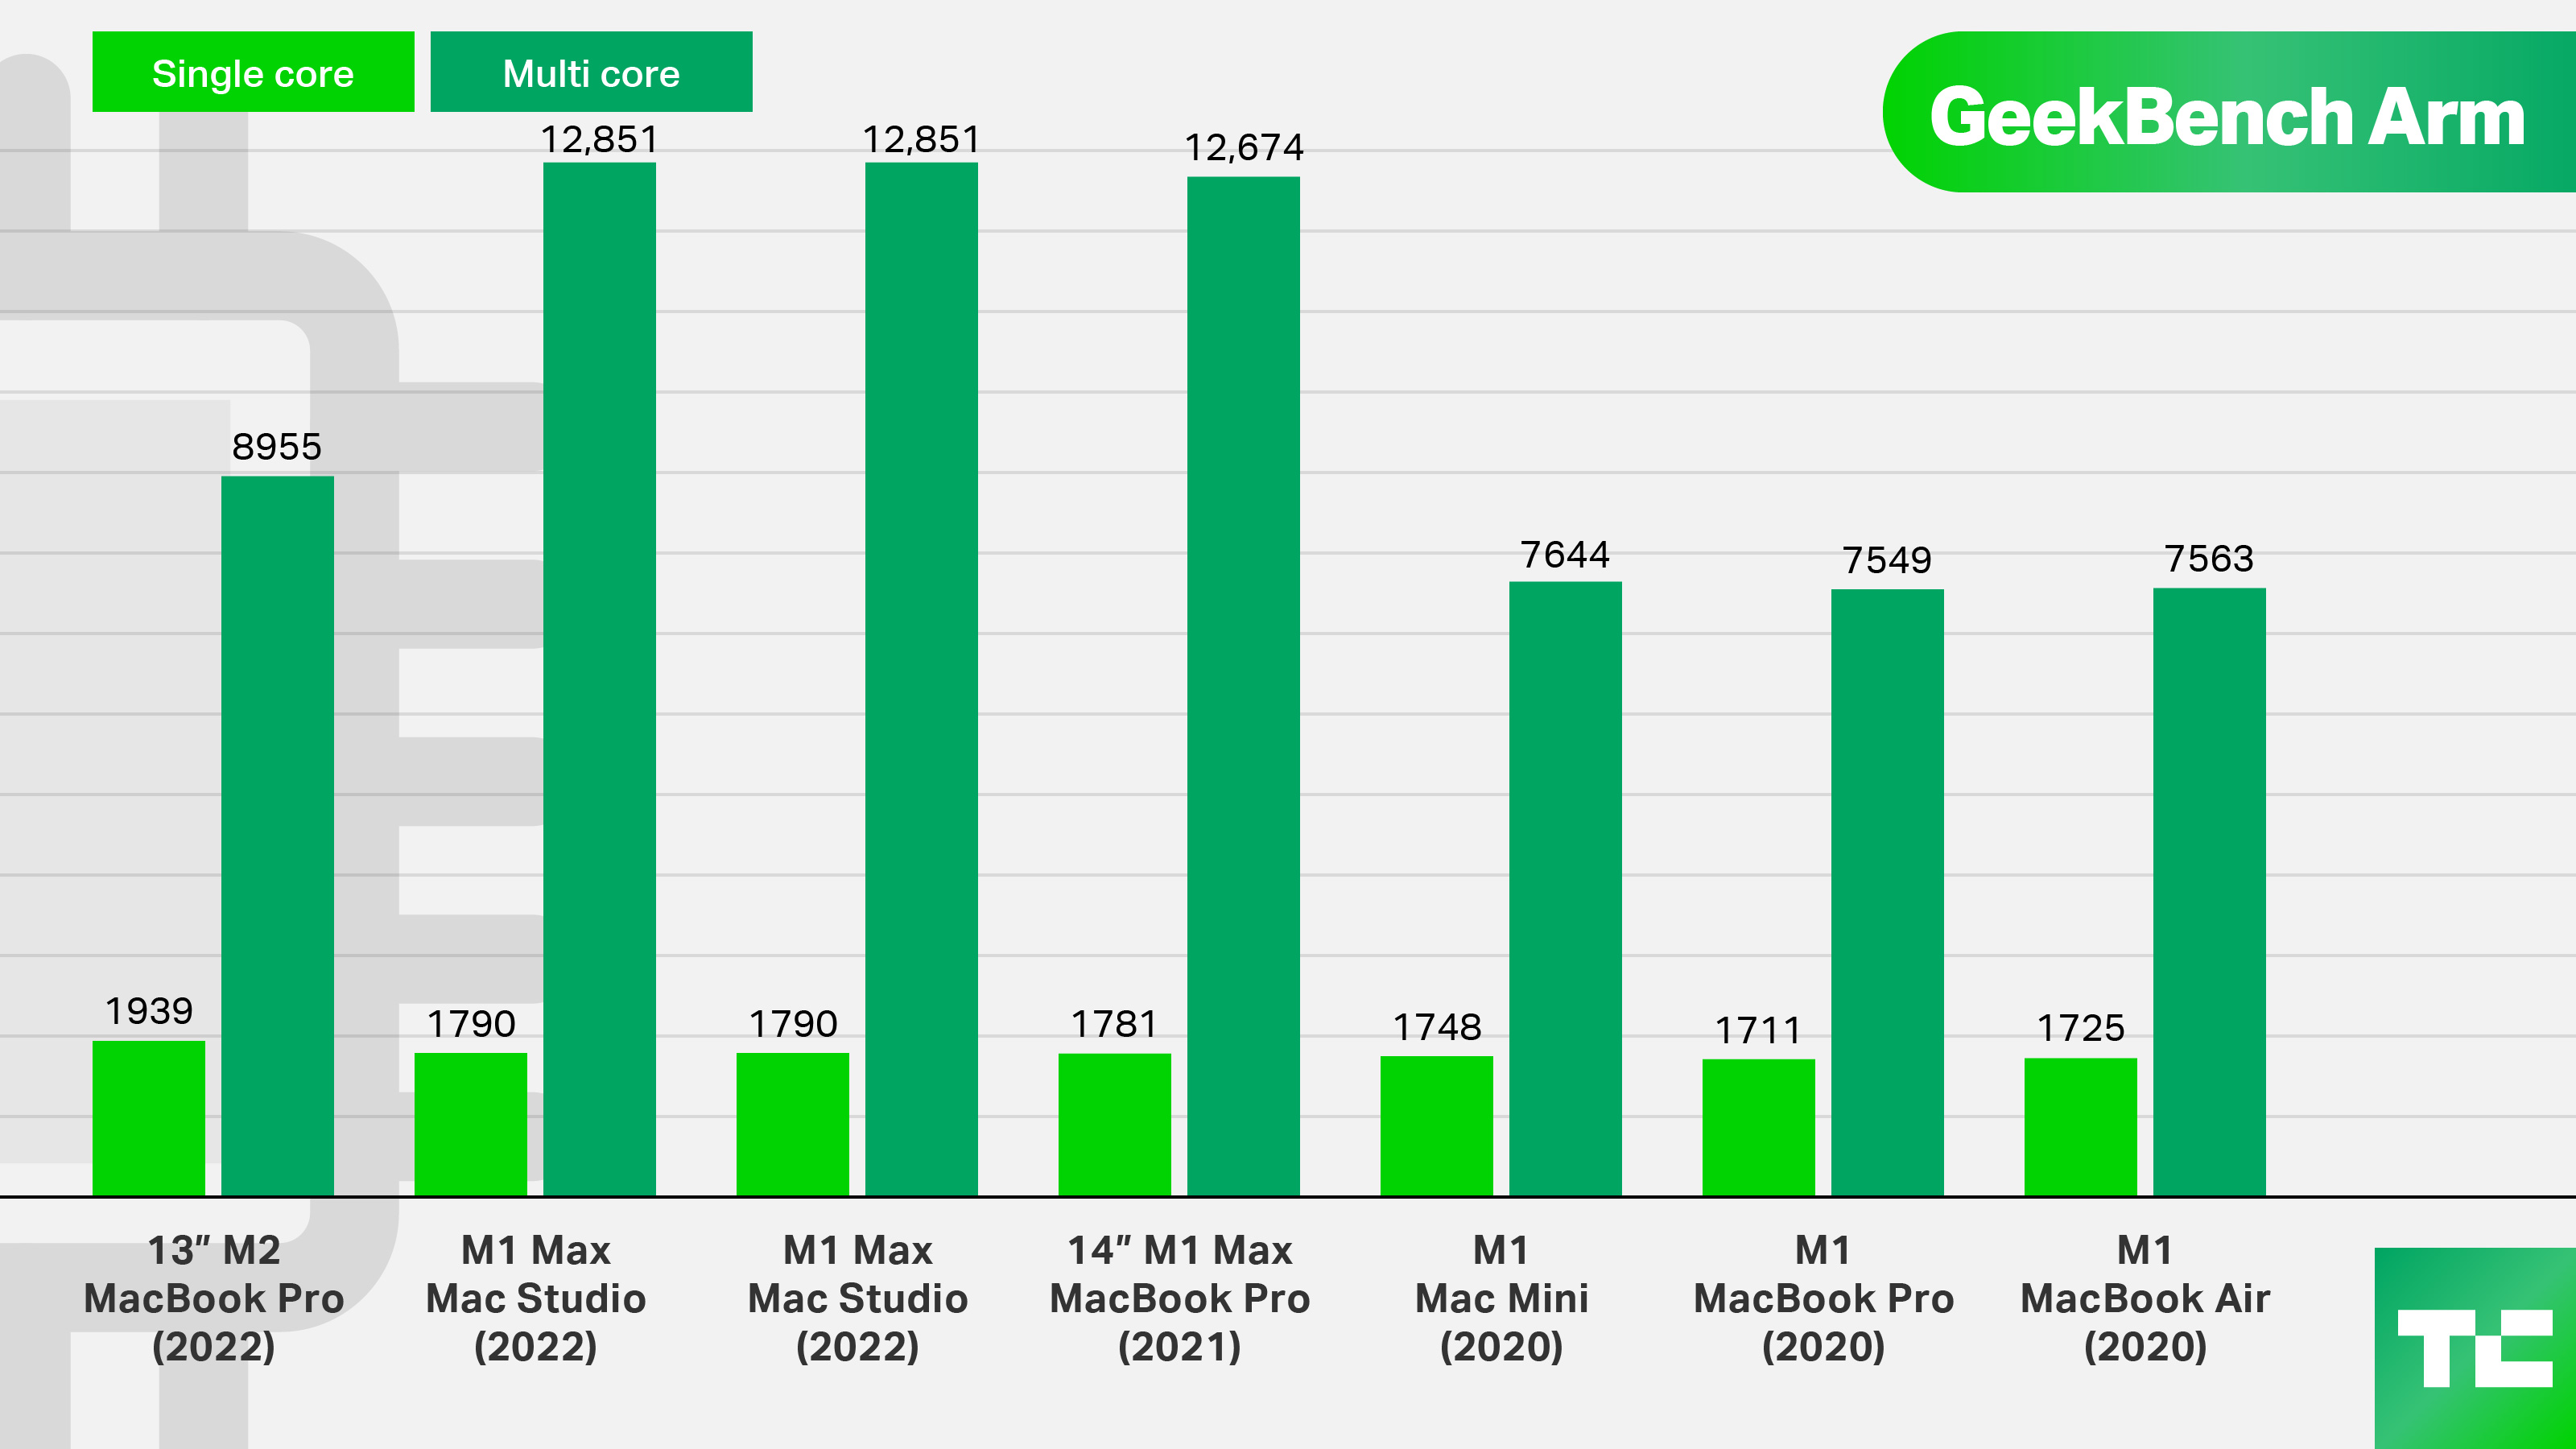 13" M2 MacBook Pro (2022). Single core: 1939; Multicore: 8955.